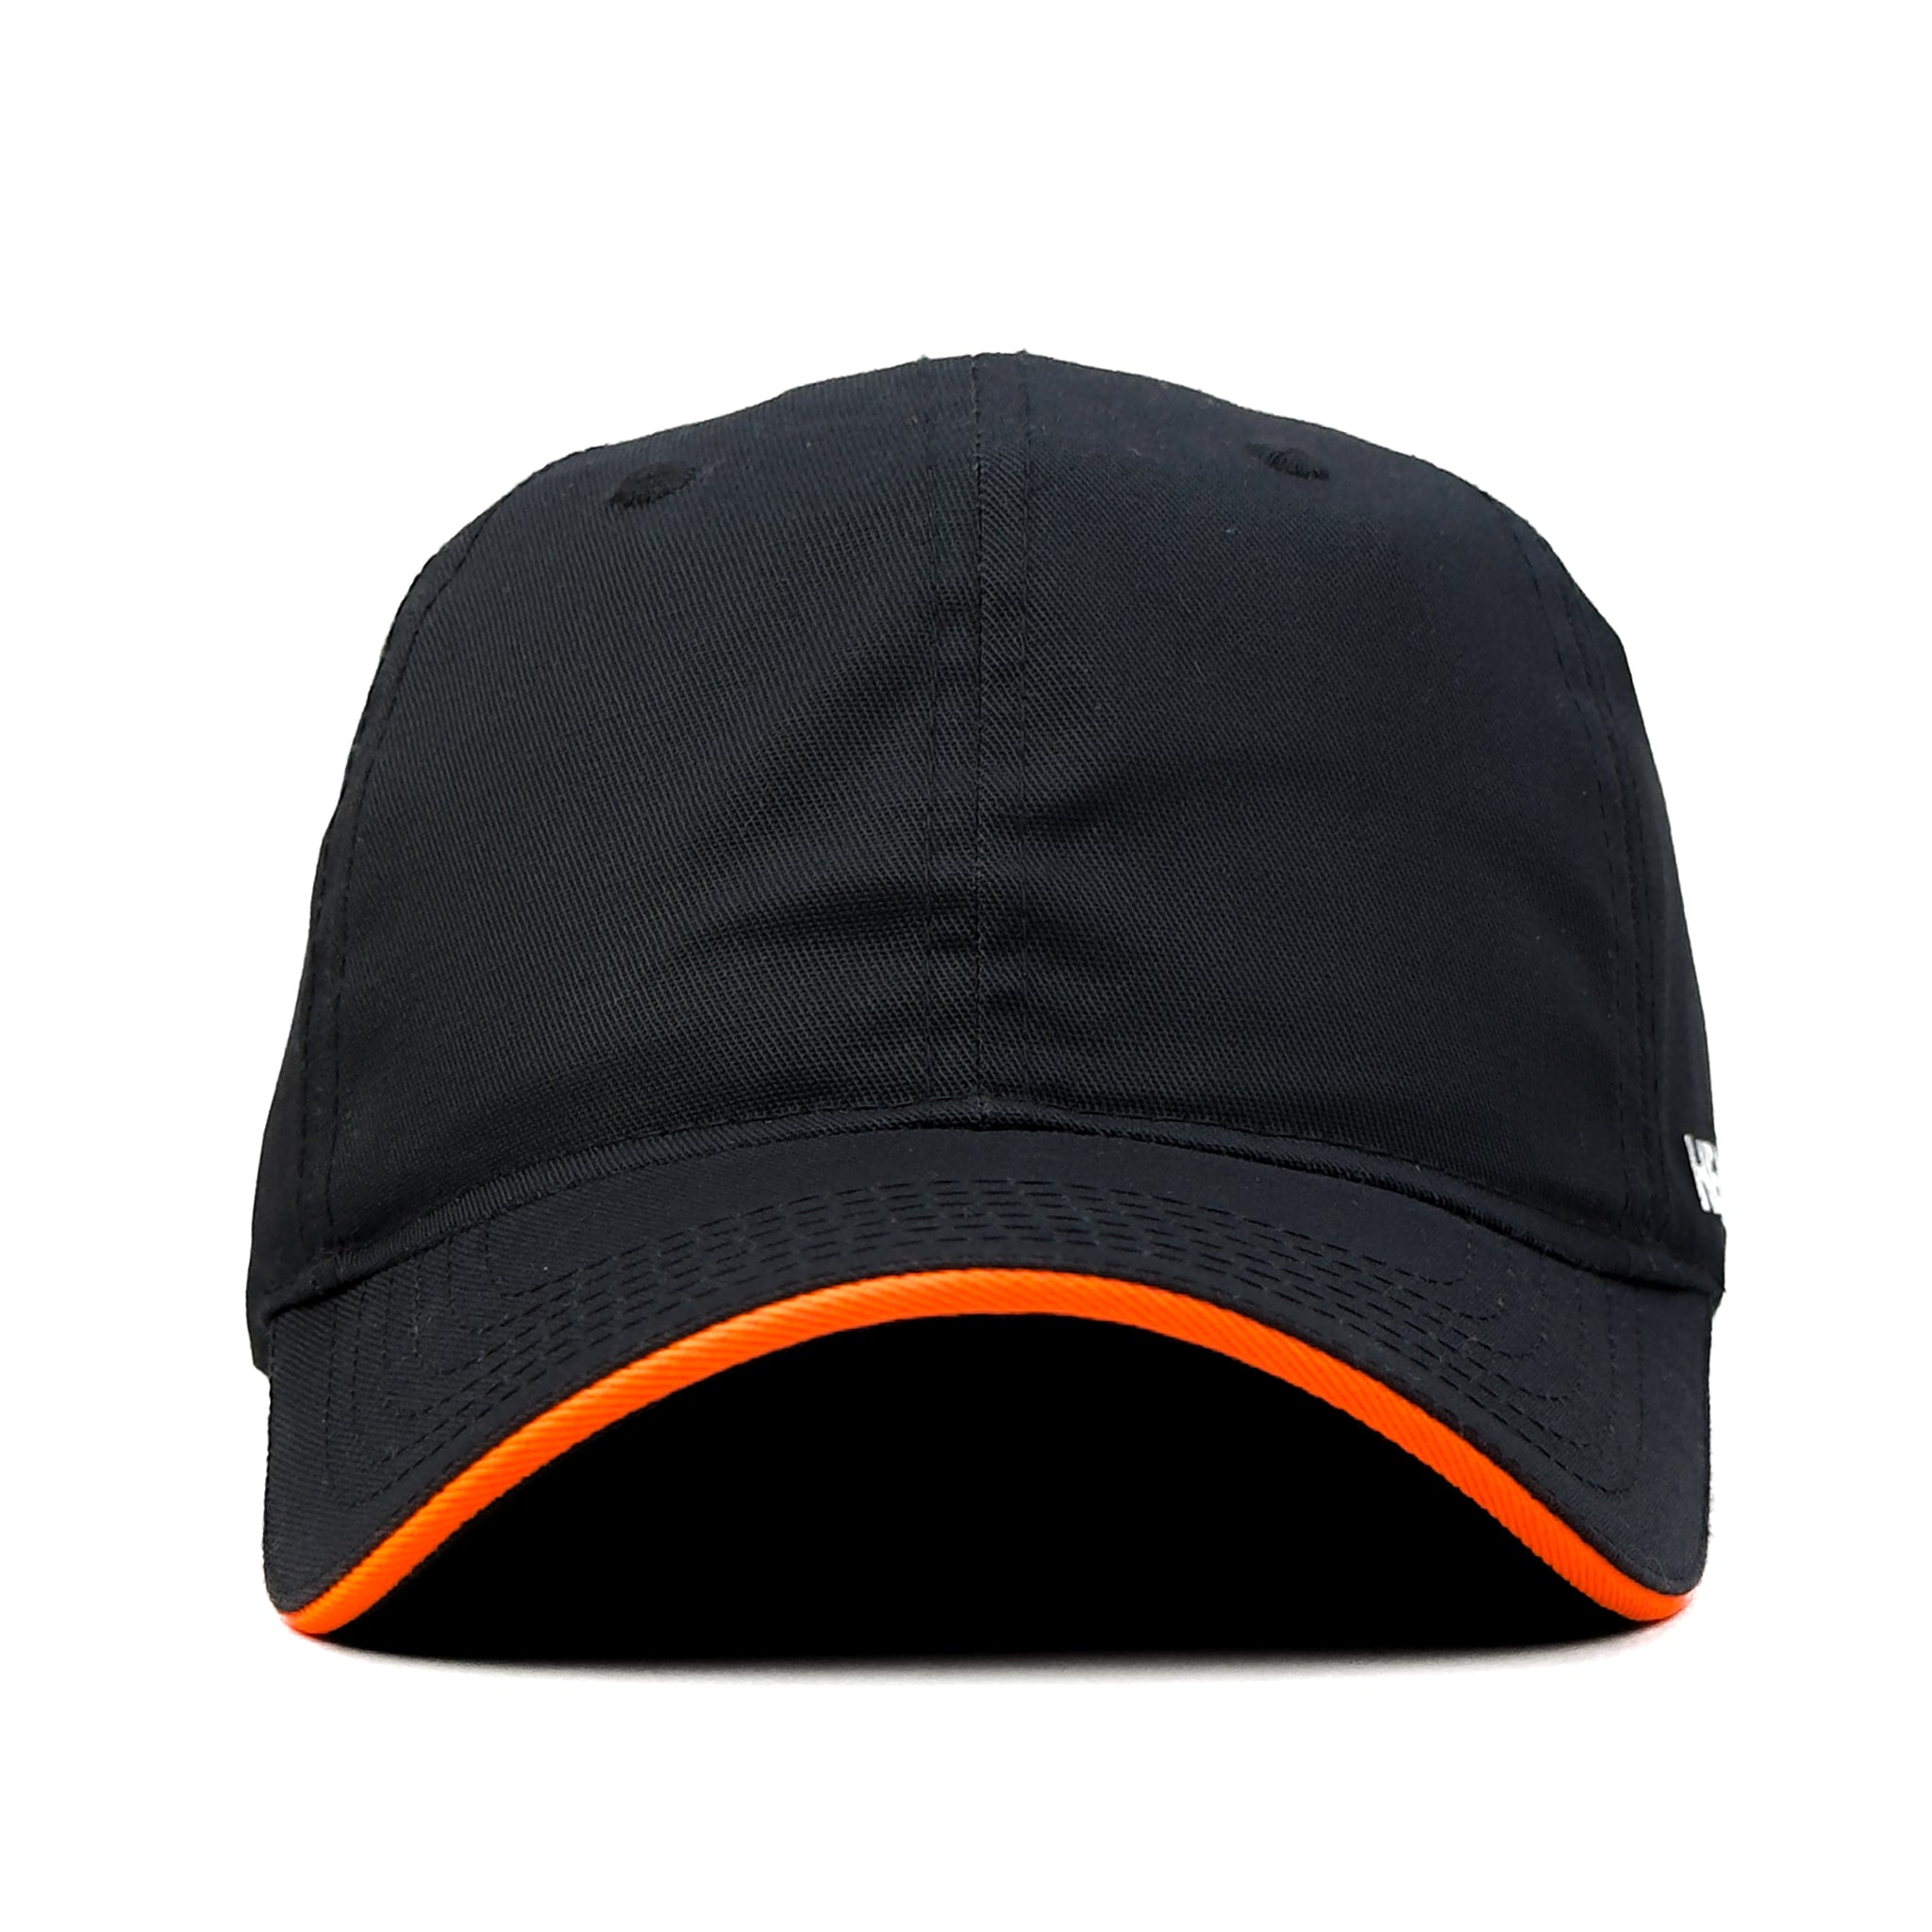 HEAD GEAR BLACK WITH ORANGE SANDWICH CAP